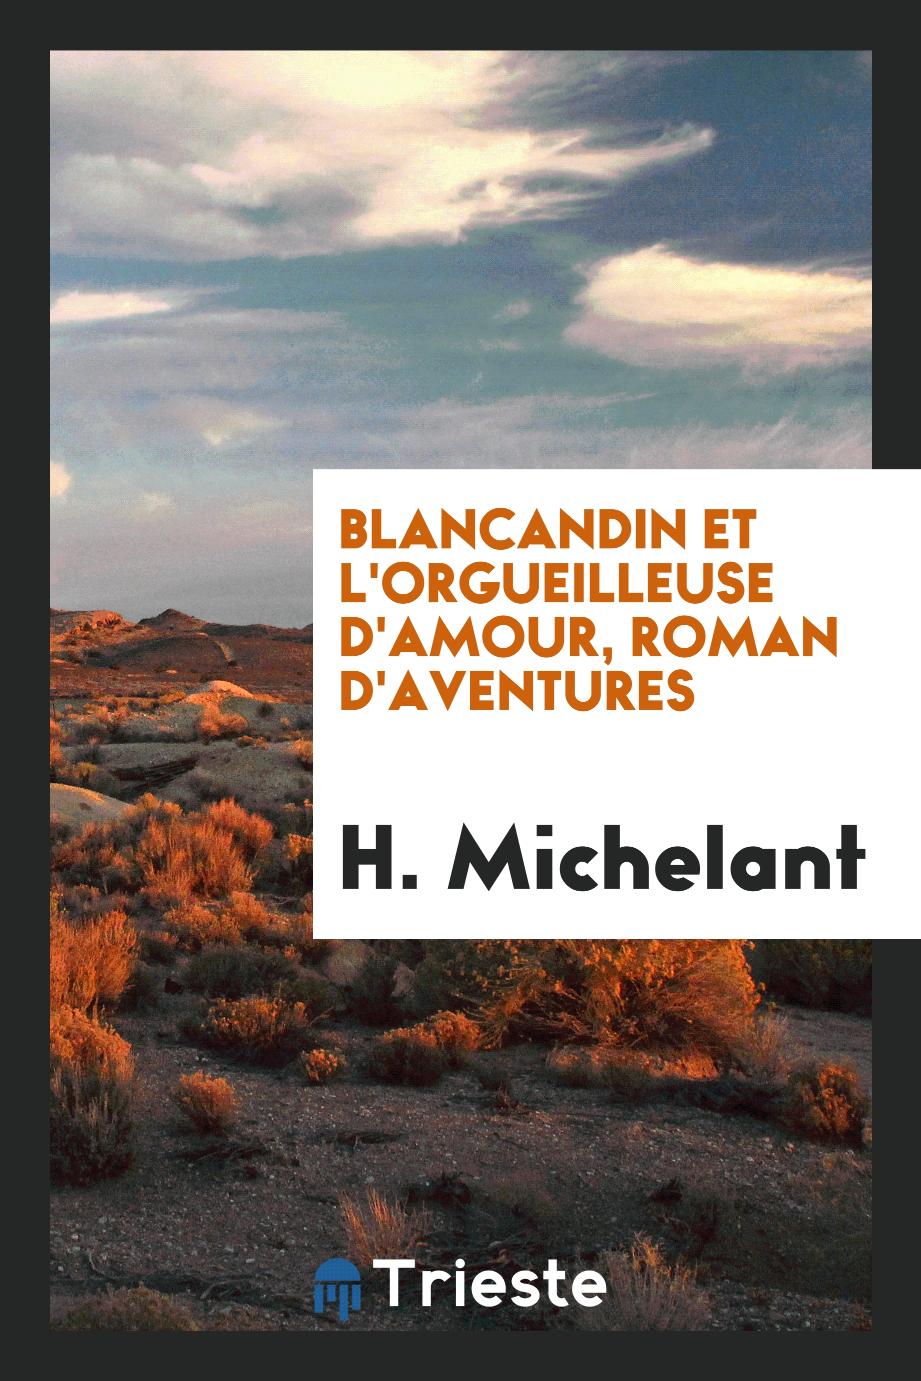 Blancandin et l'Orgueilleuse d'amour, roman d'aventures